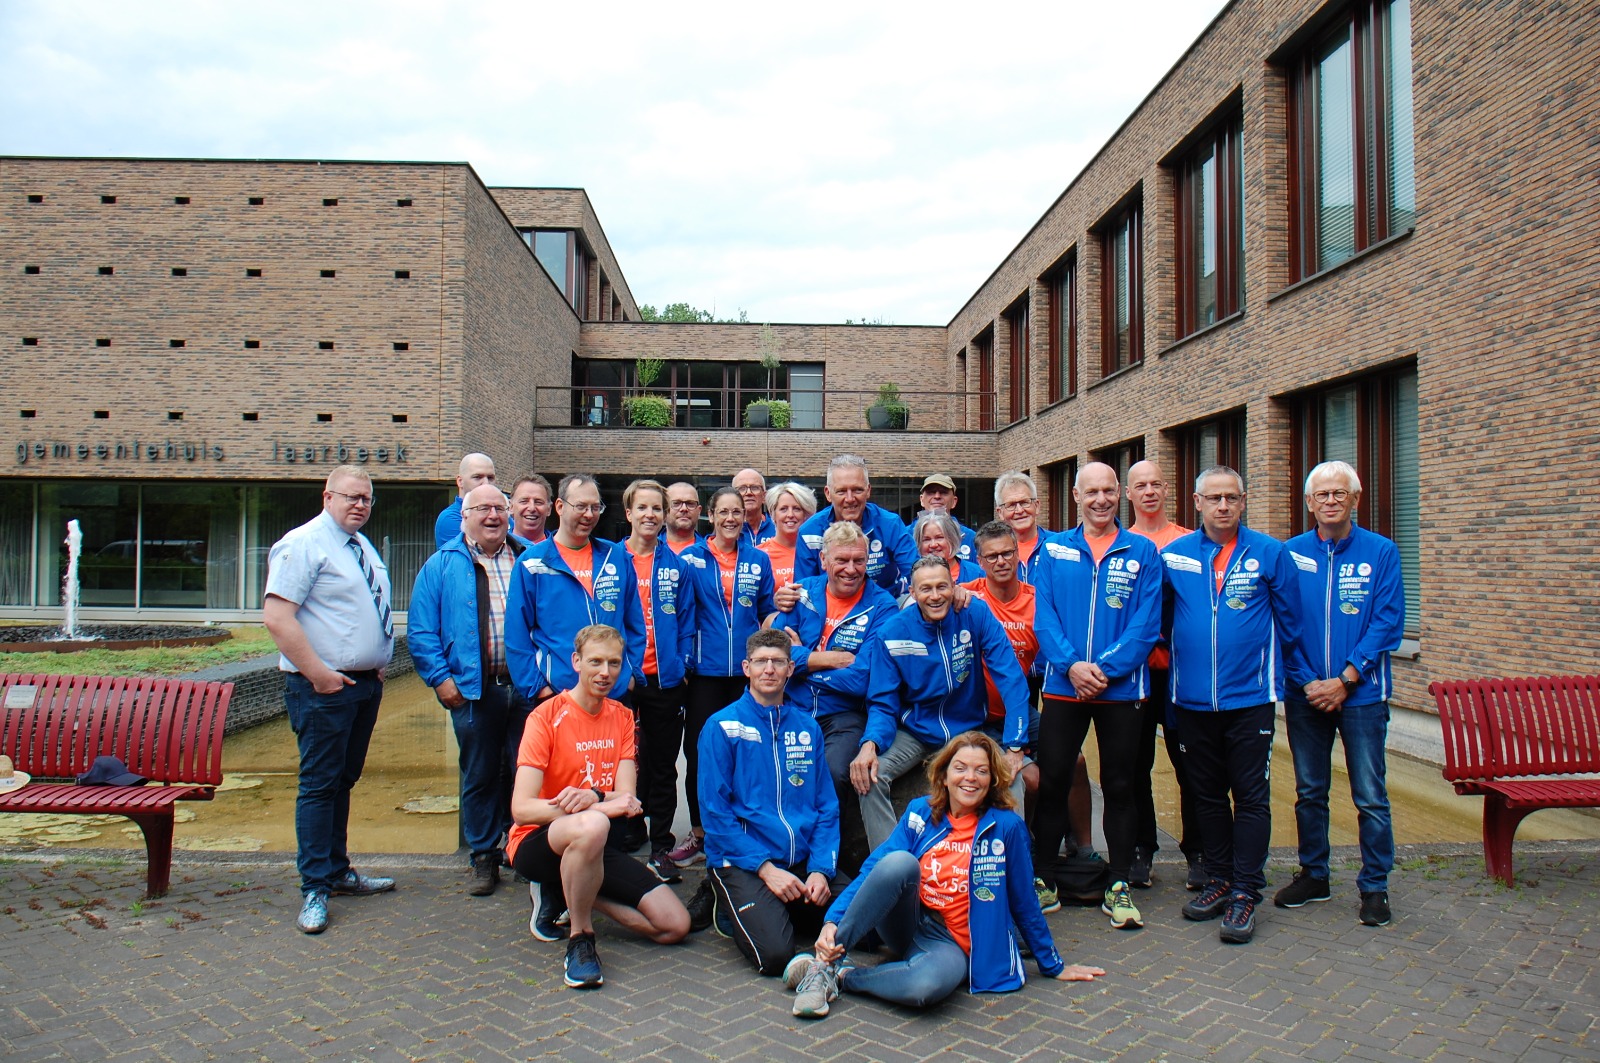 Runningteam Laarbeek onderweg naar de start Roparun 2022